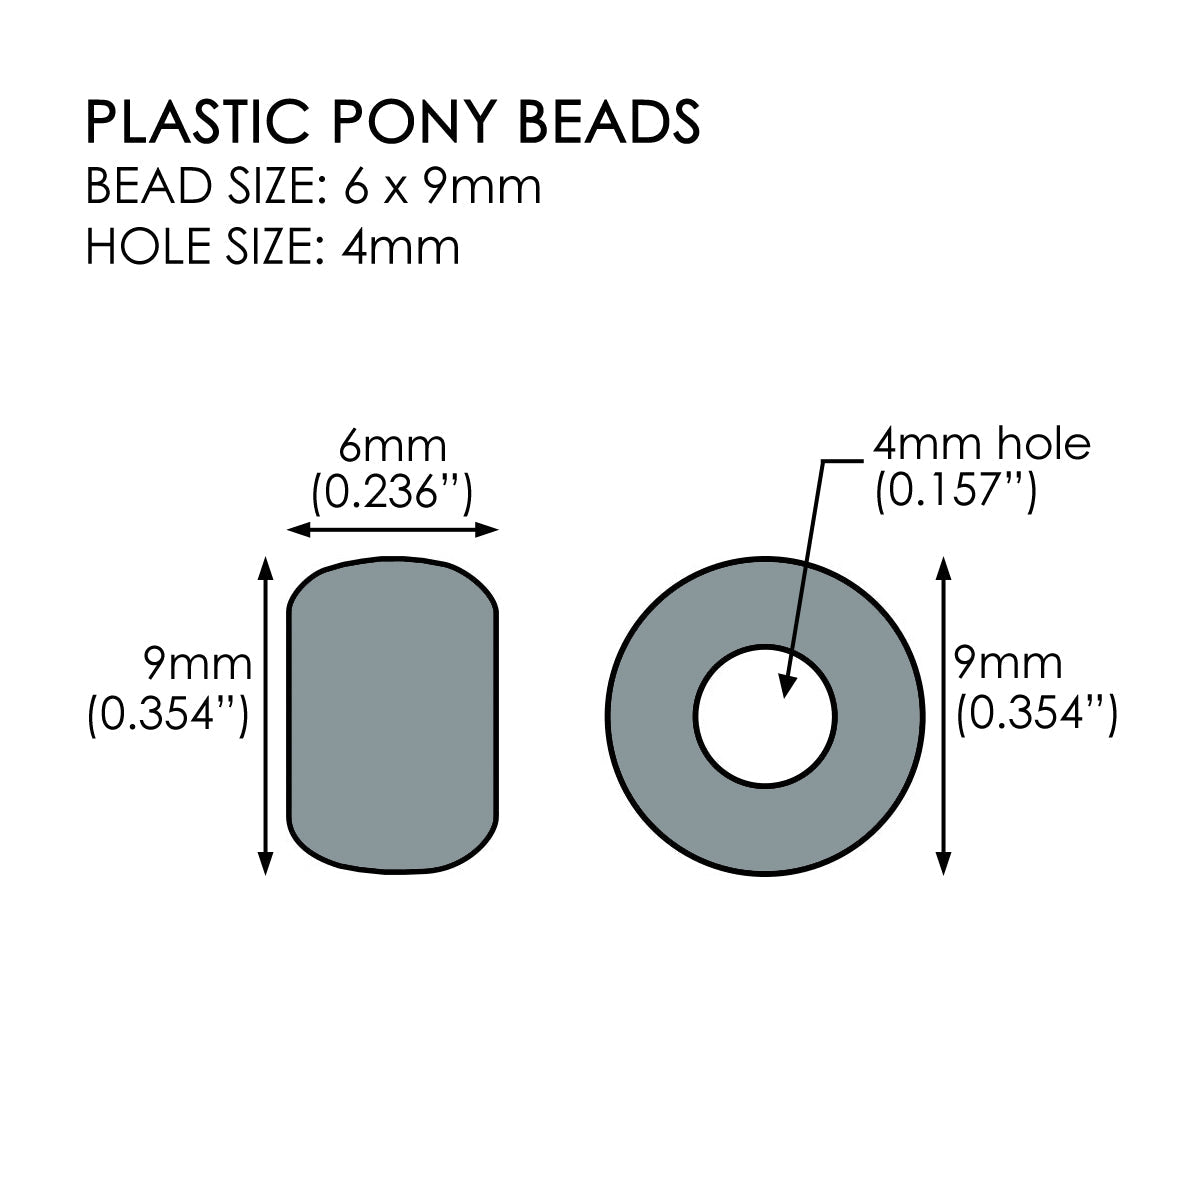 True Blue Pony Beads for bracelets, jewelry, arts crafts - Pony